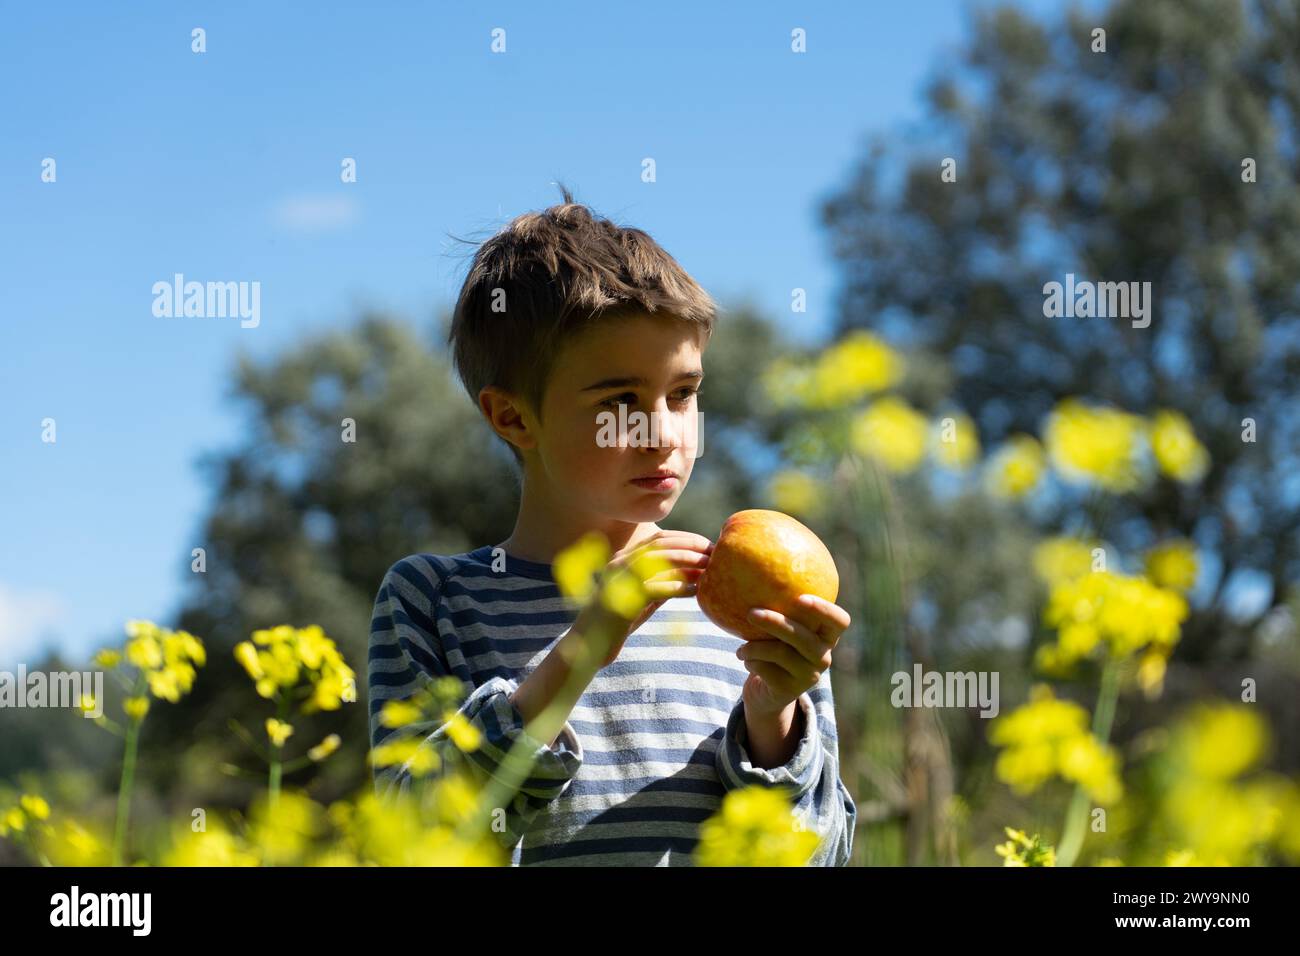 Bambino in natura in primavera con fiori gialli e una mela in mano Foto Stock